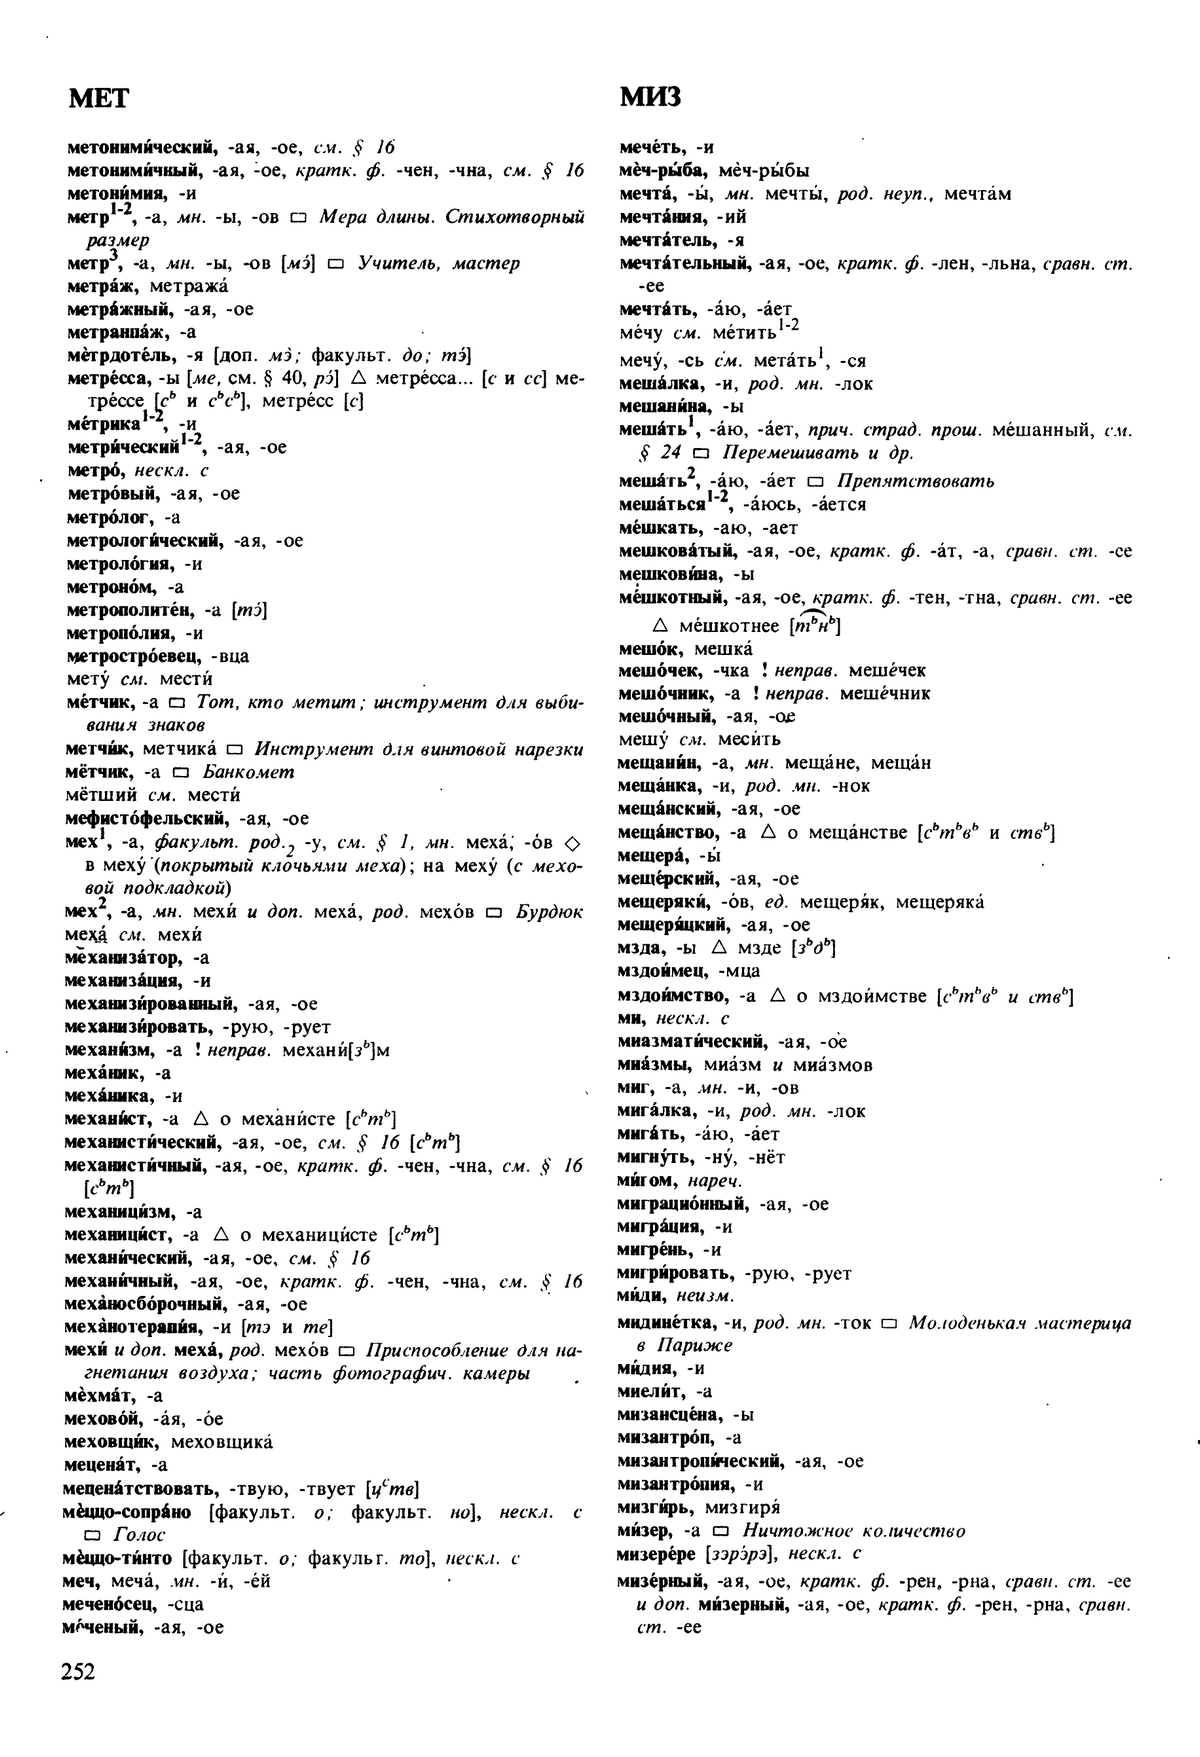 Фотокопия pdf / скан страницы 252 орфоэпического словаря под редакцией Аванесова (5 издание, 1989 год)